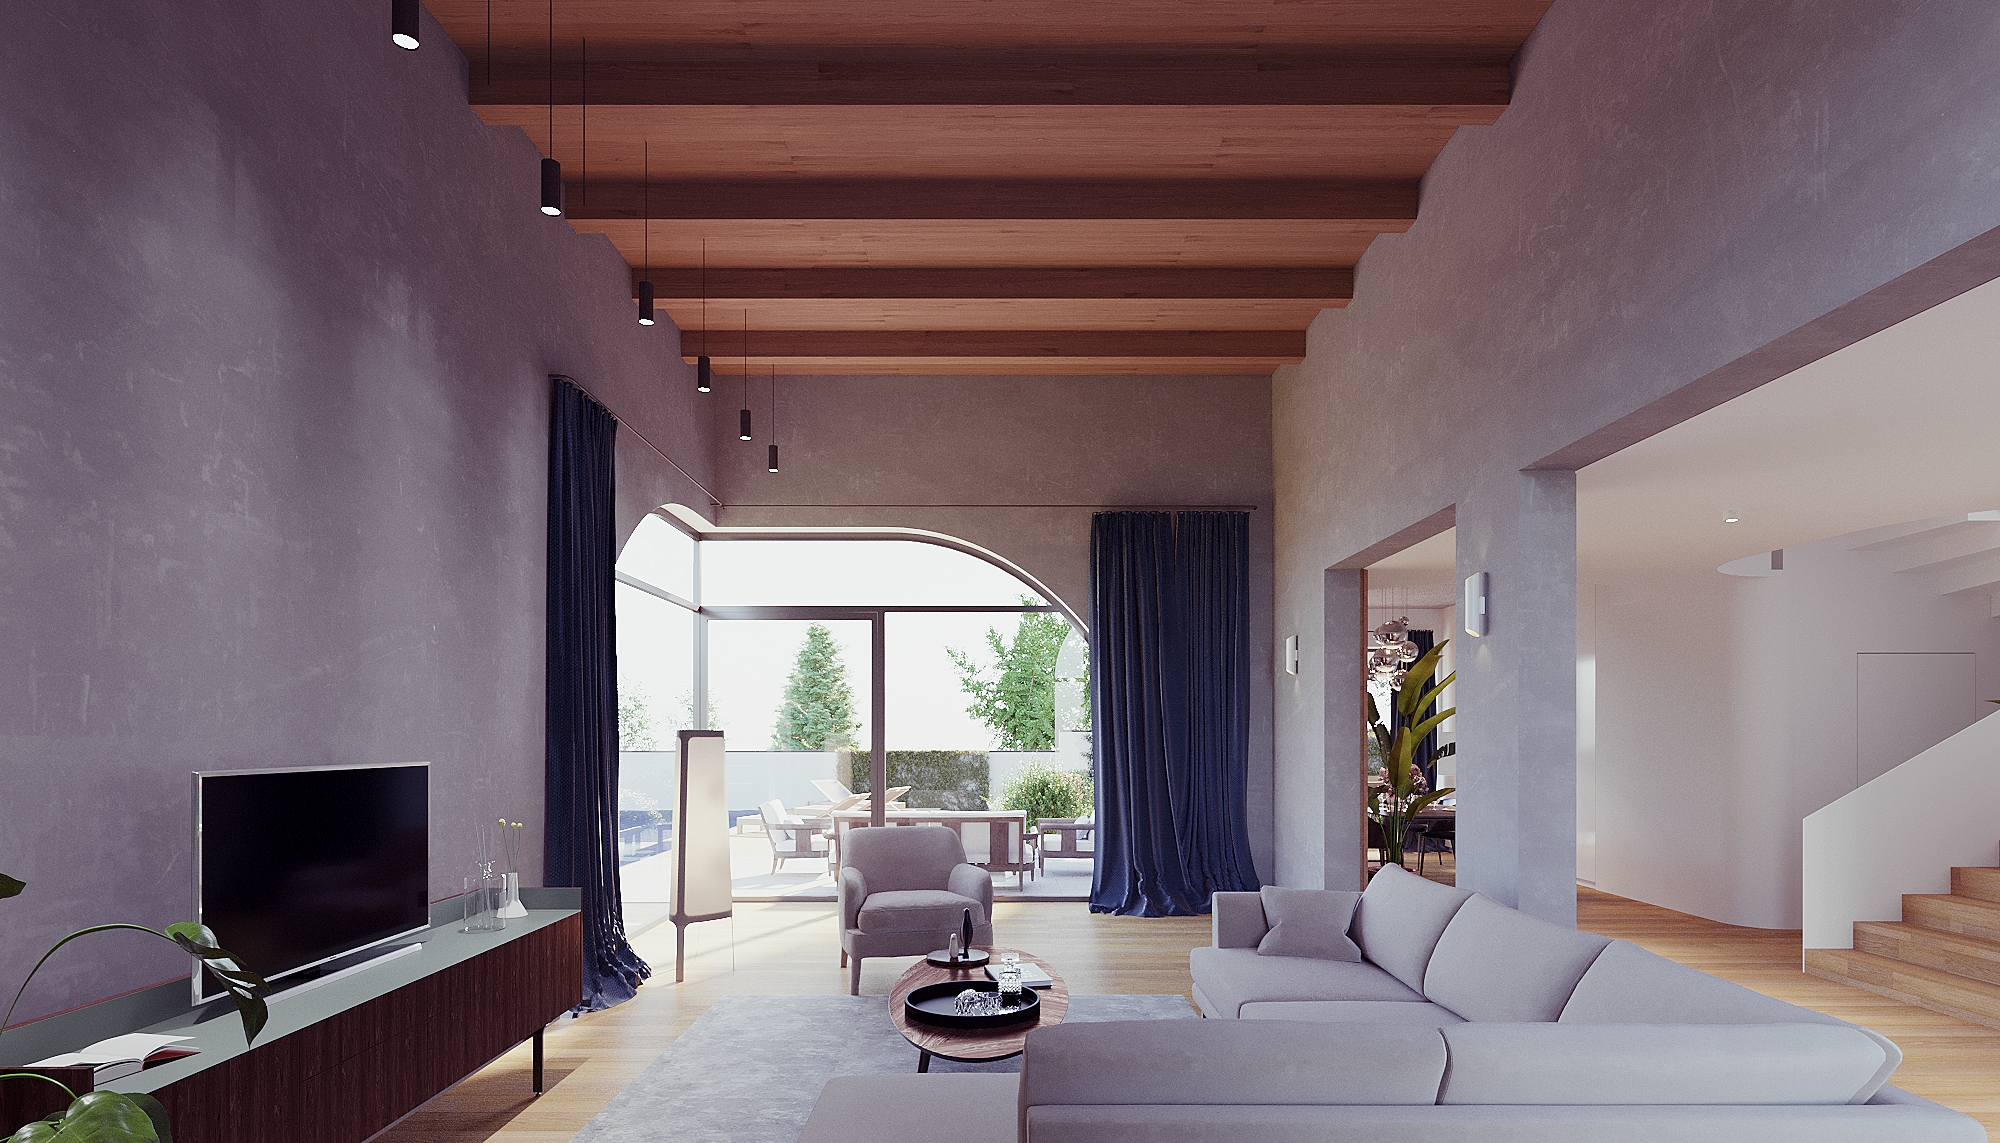 https://nbc-arhitect.ro/wp-content/uploads/2020/11/NBC-Arhitect-_-Laguna-_-Housing-_-interior-view_1.jpg